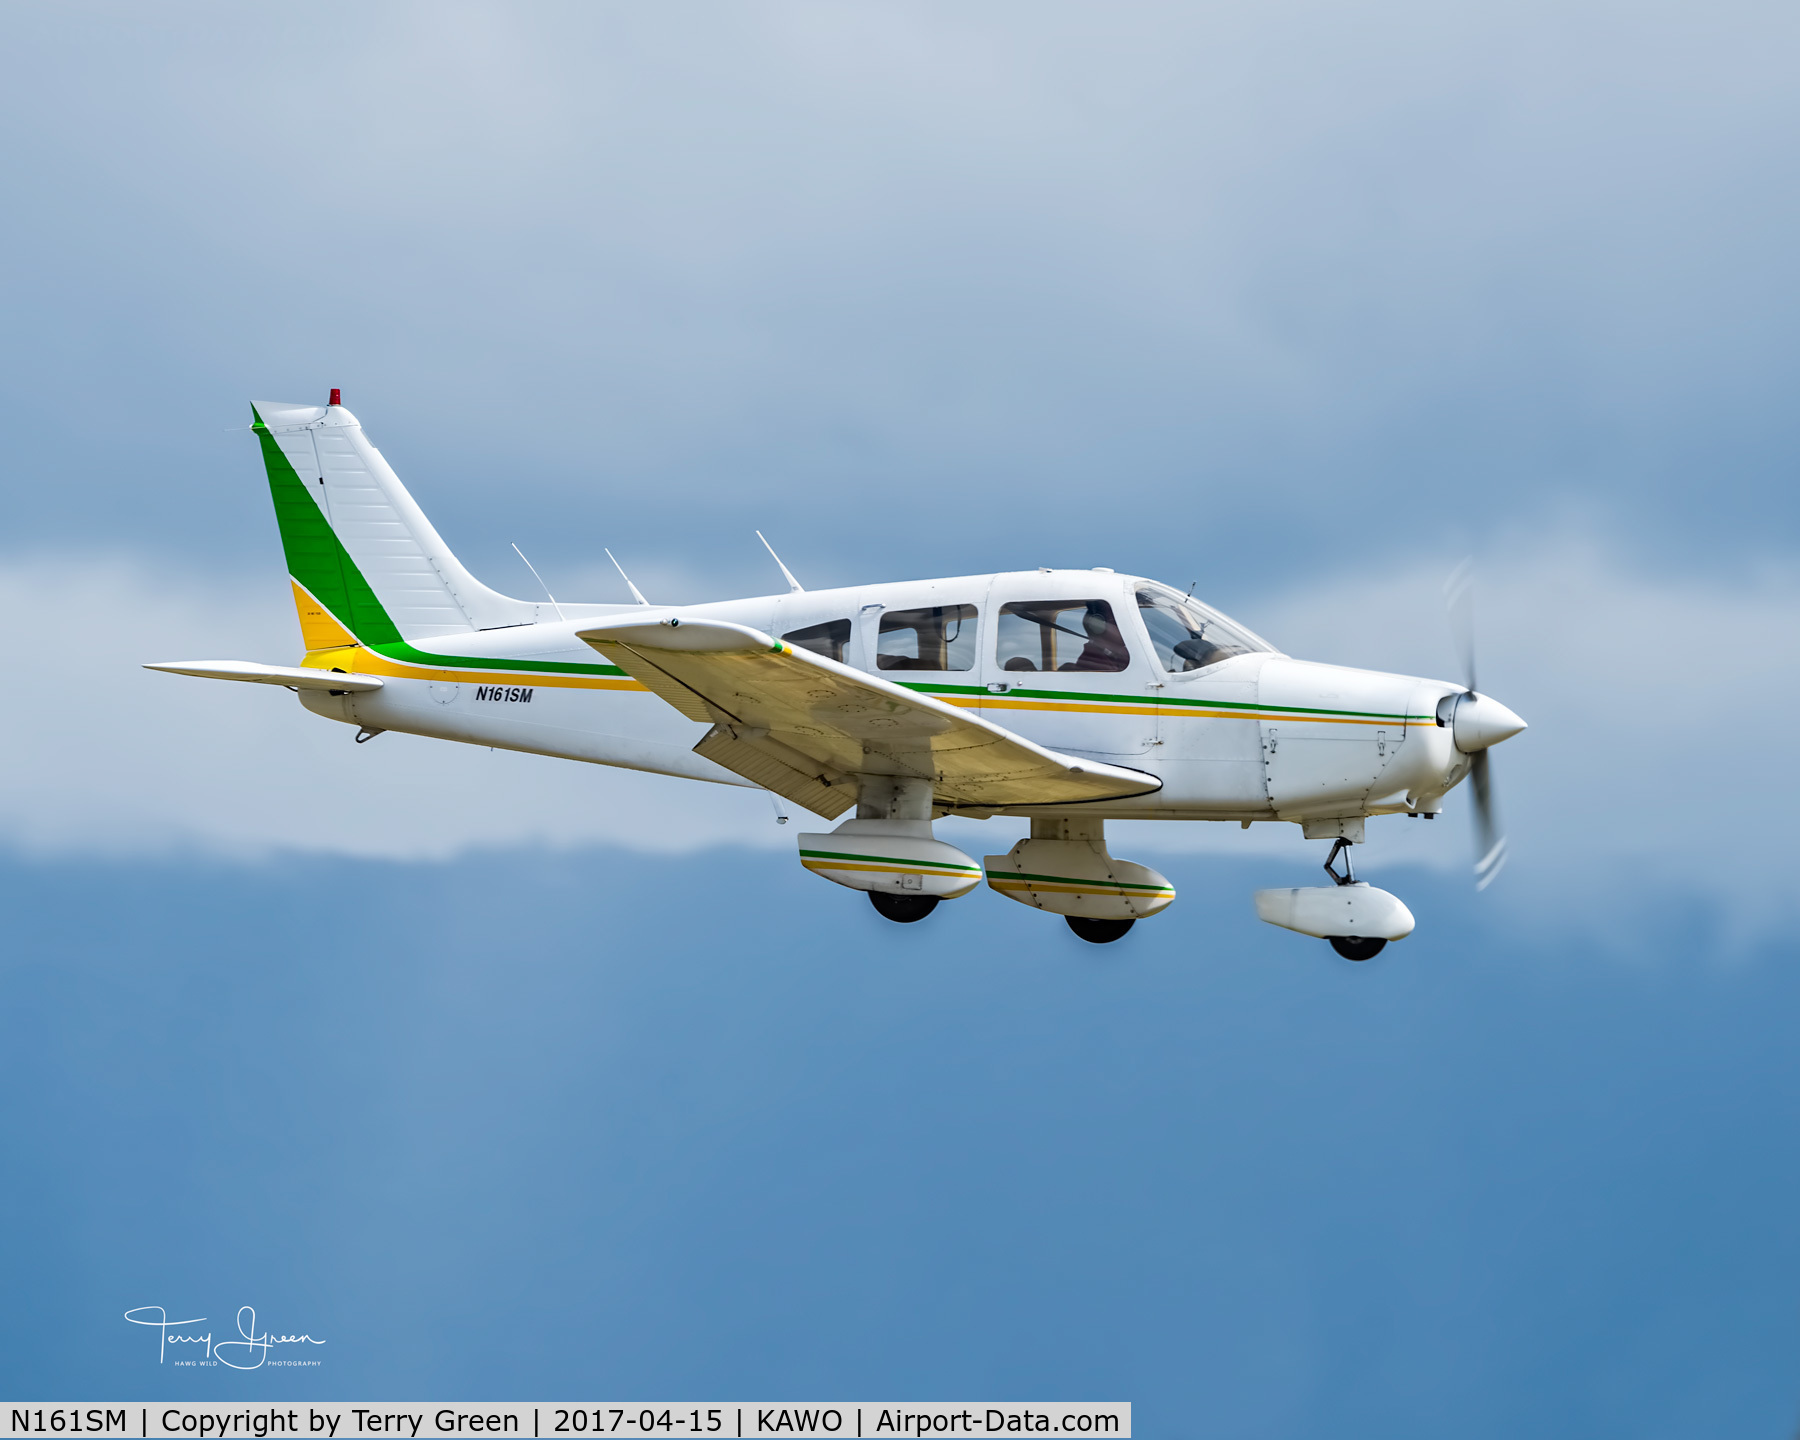 N161SM, 1979 Piper PA-28-161 C/N 28-7916508, KAWO